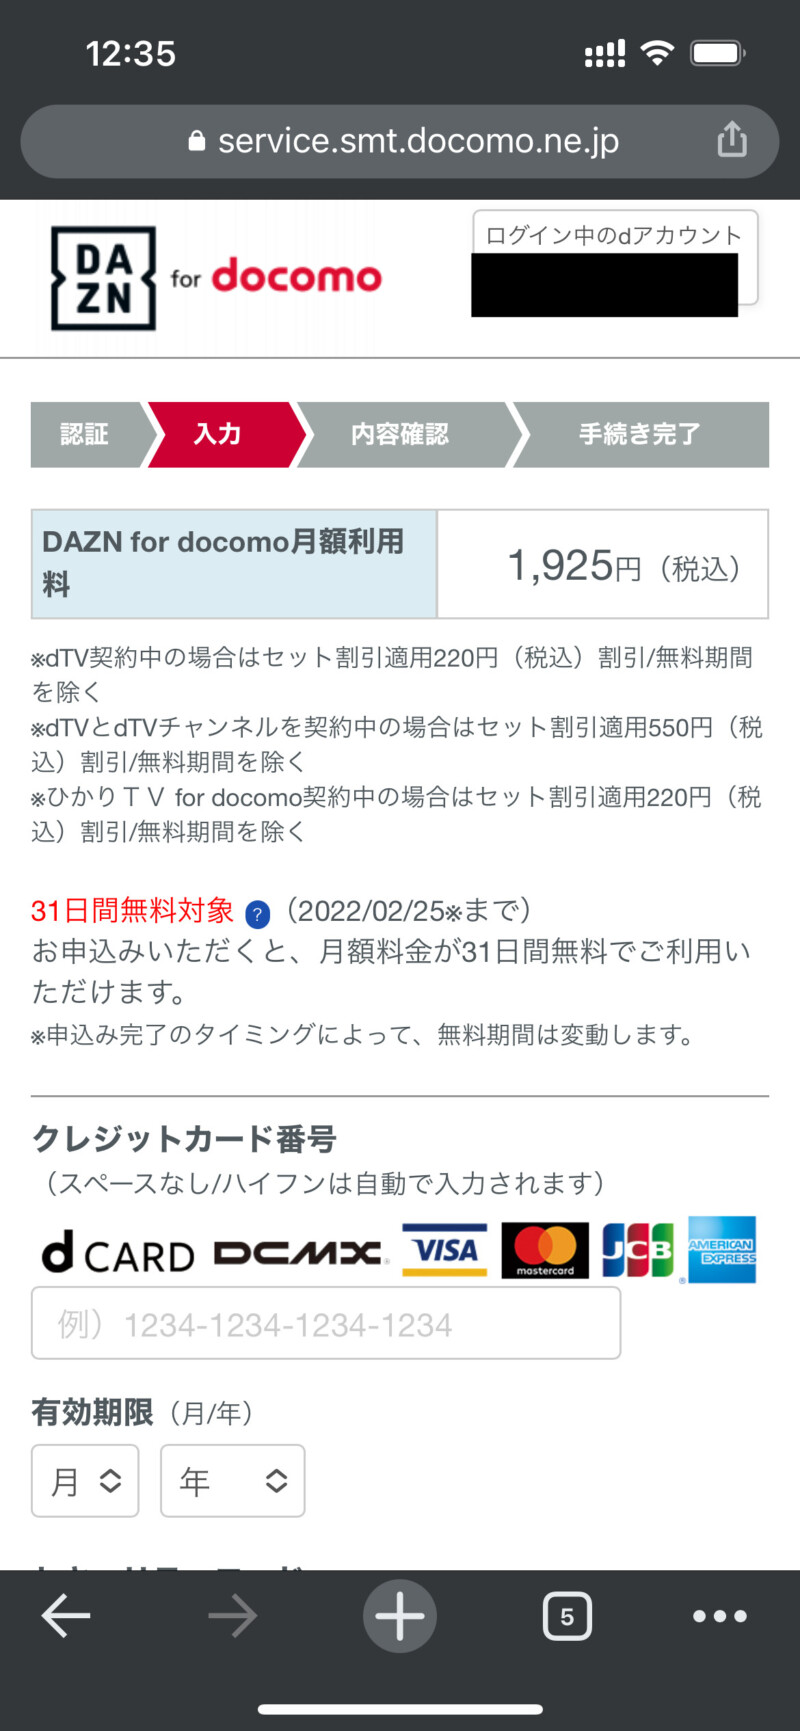 DAZN for docomoの登録方法4